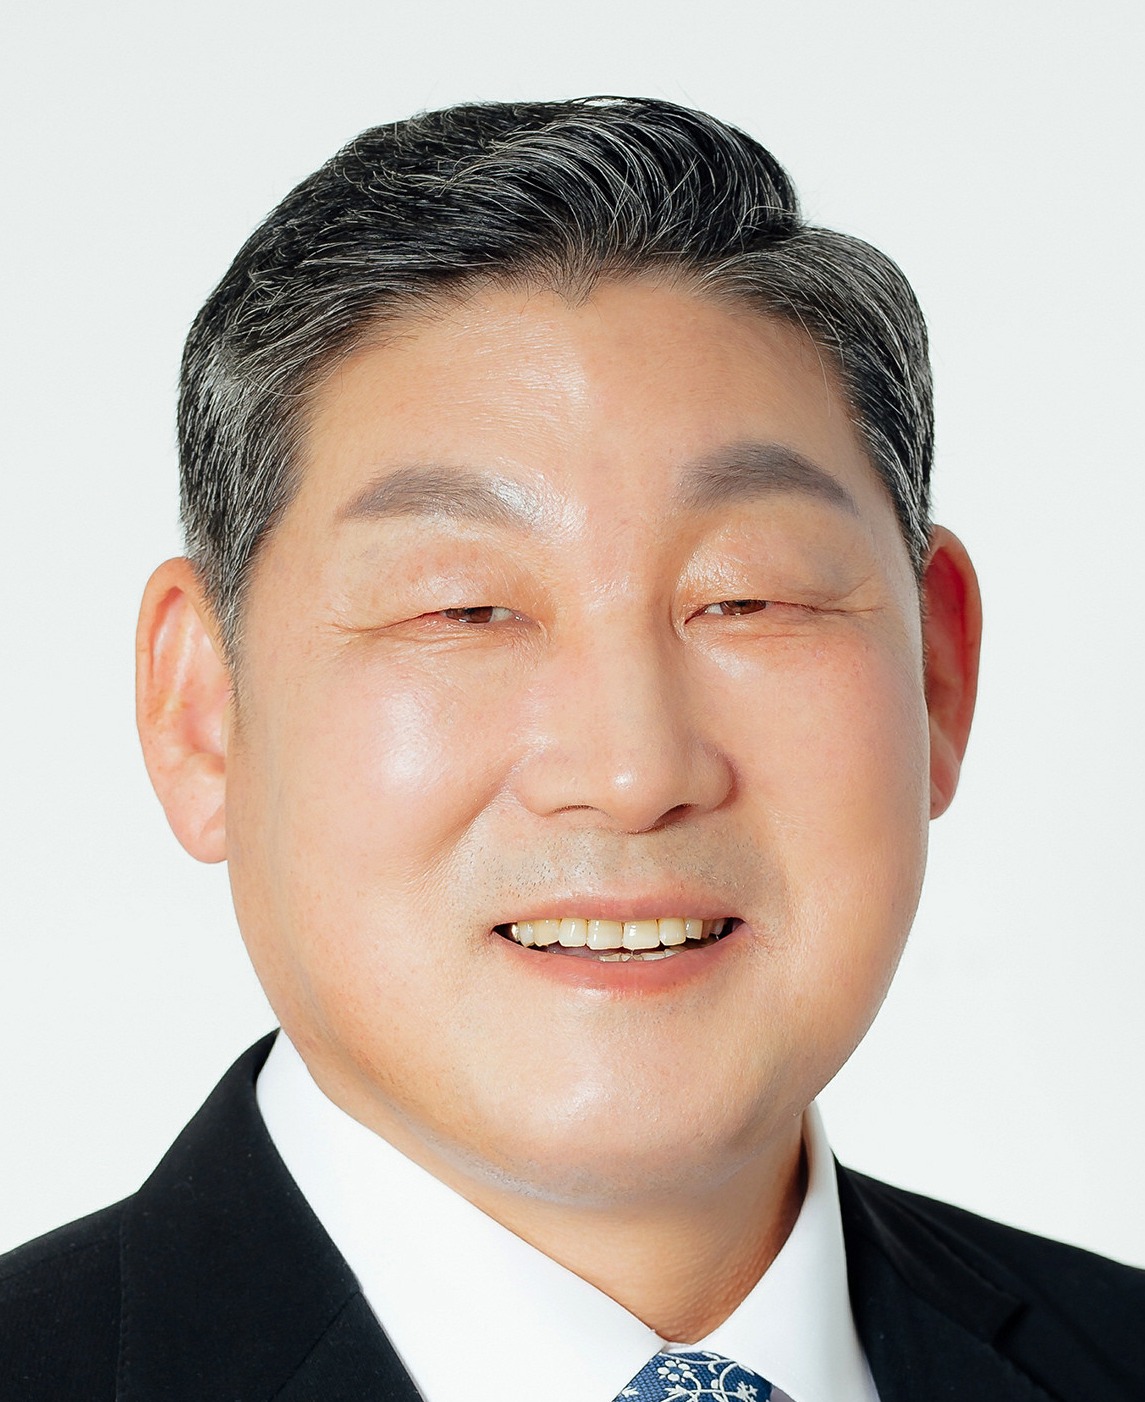 장경식 경북도의회 의장